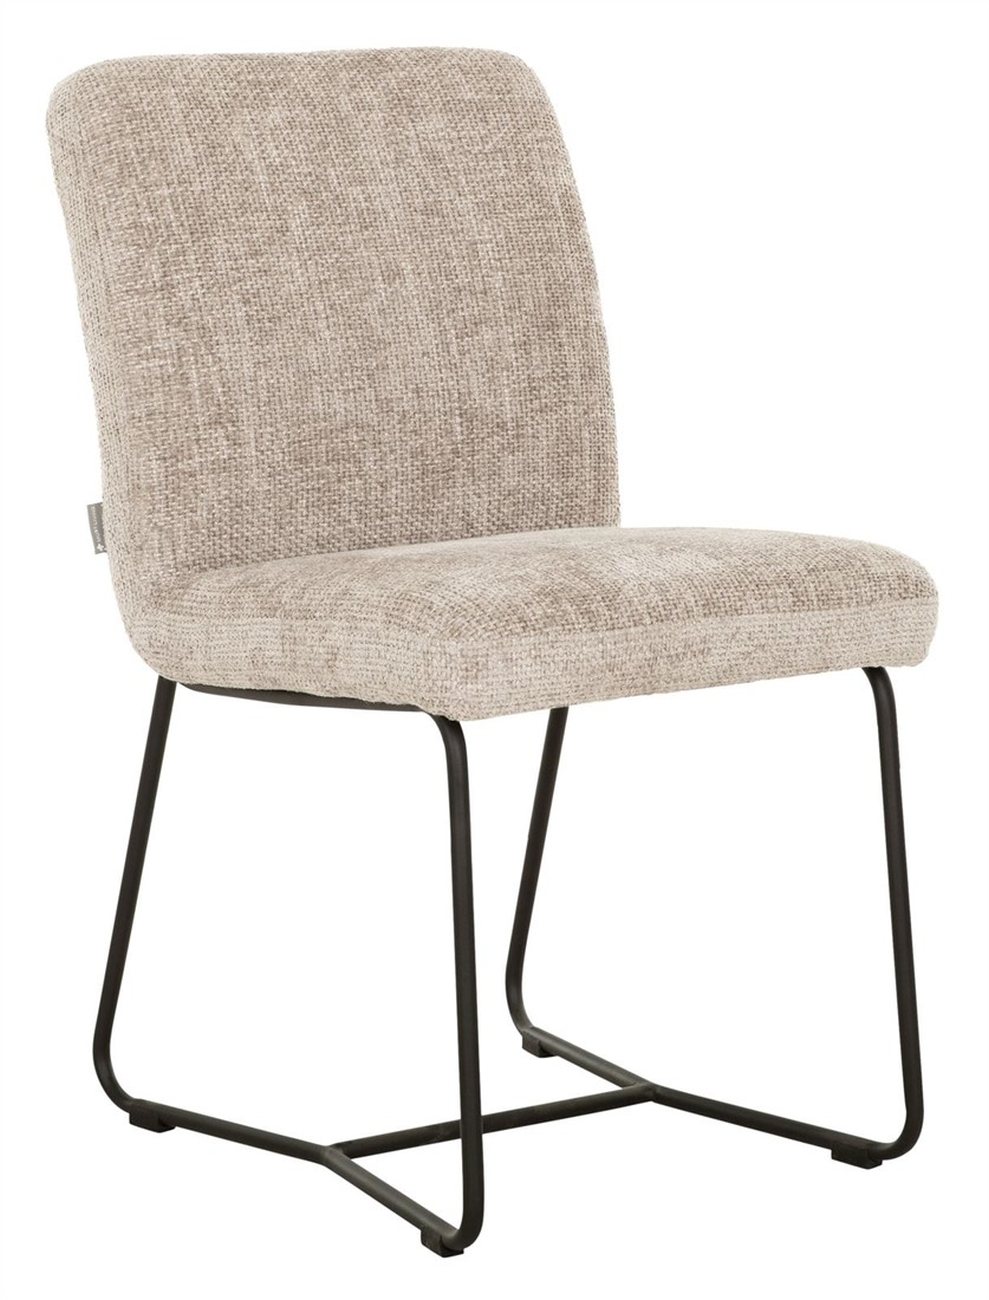 Der Esszimmerstuhl Zola überzeugt mit seinem modernen Design. Gefertigt wurde er aus Stoff, welcher einen Sand Farbton besitzt. Das Gestell ist aus Metall und hat eine schwarze Farbe. Der Stuhl besitzt eine Größe von 87x46x56 cm.